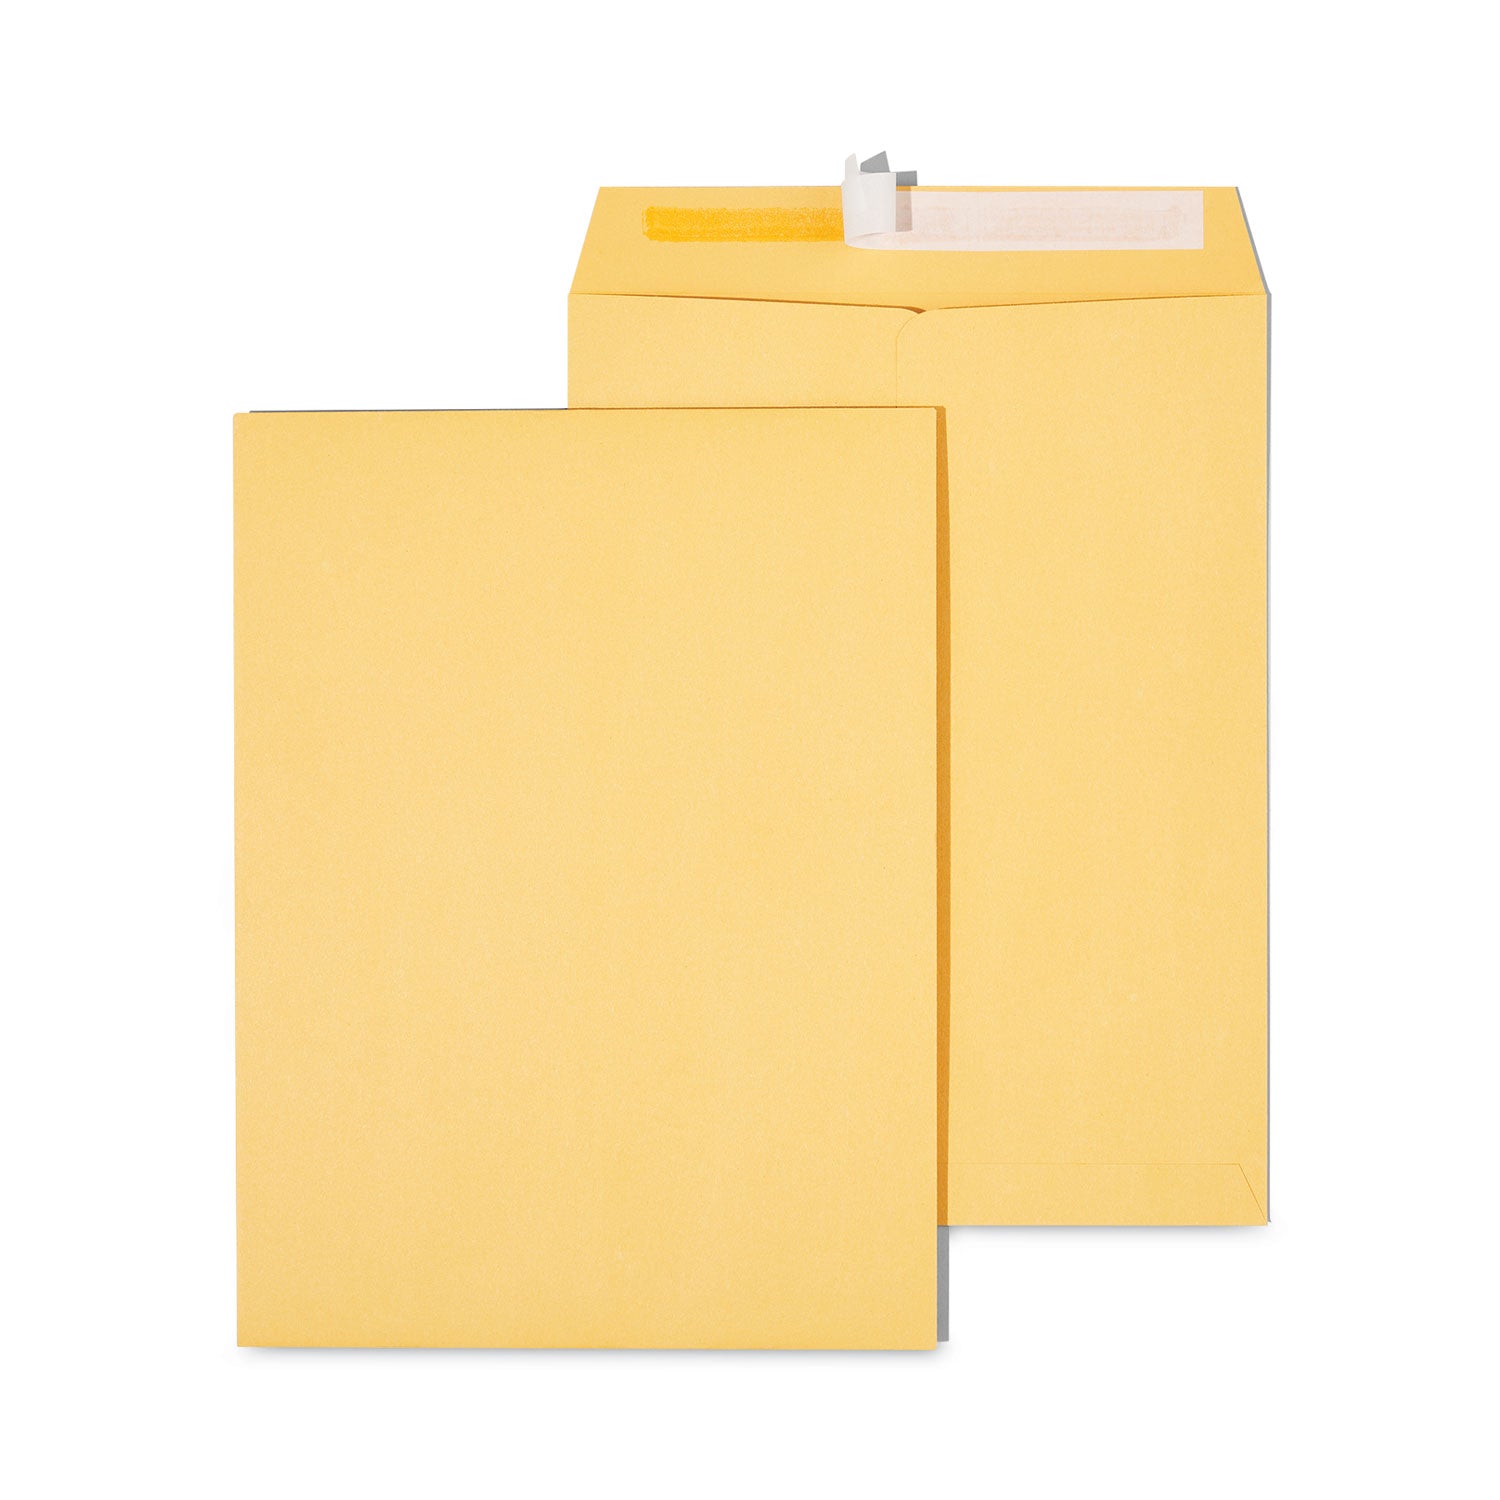 Peel Seal Strip Catalog Envelope, #10 1/2, Square Flap, Self-Adhesive Closure, 9 x 12, Natural Kraft, 100/Box - 